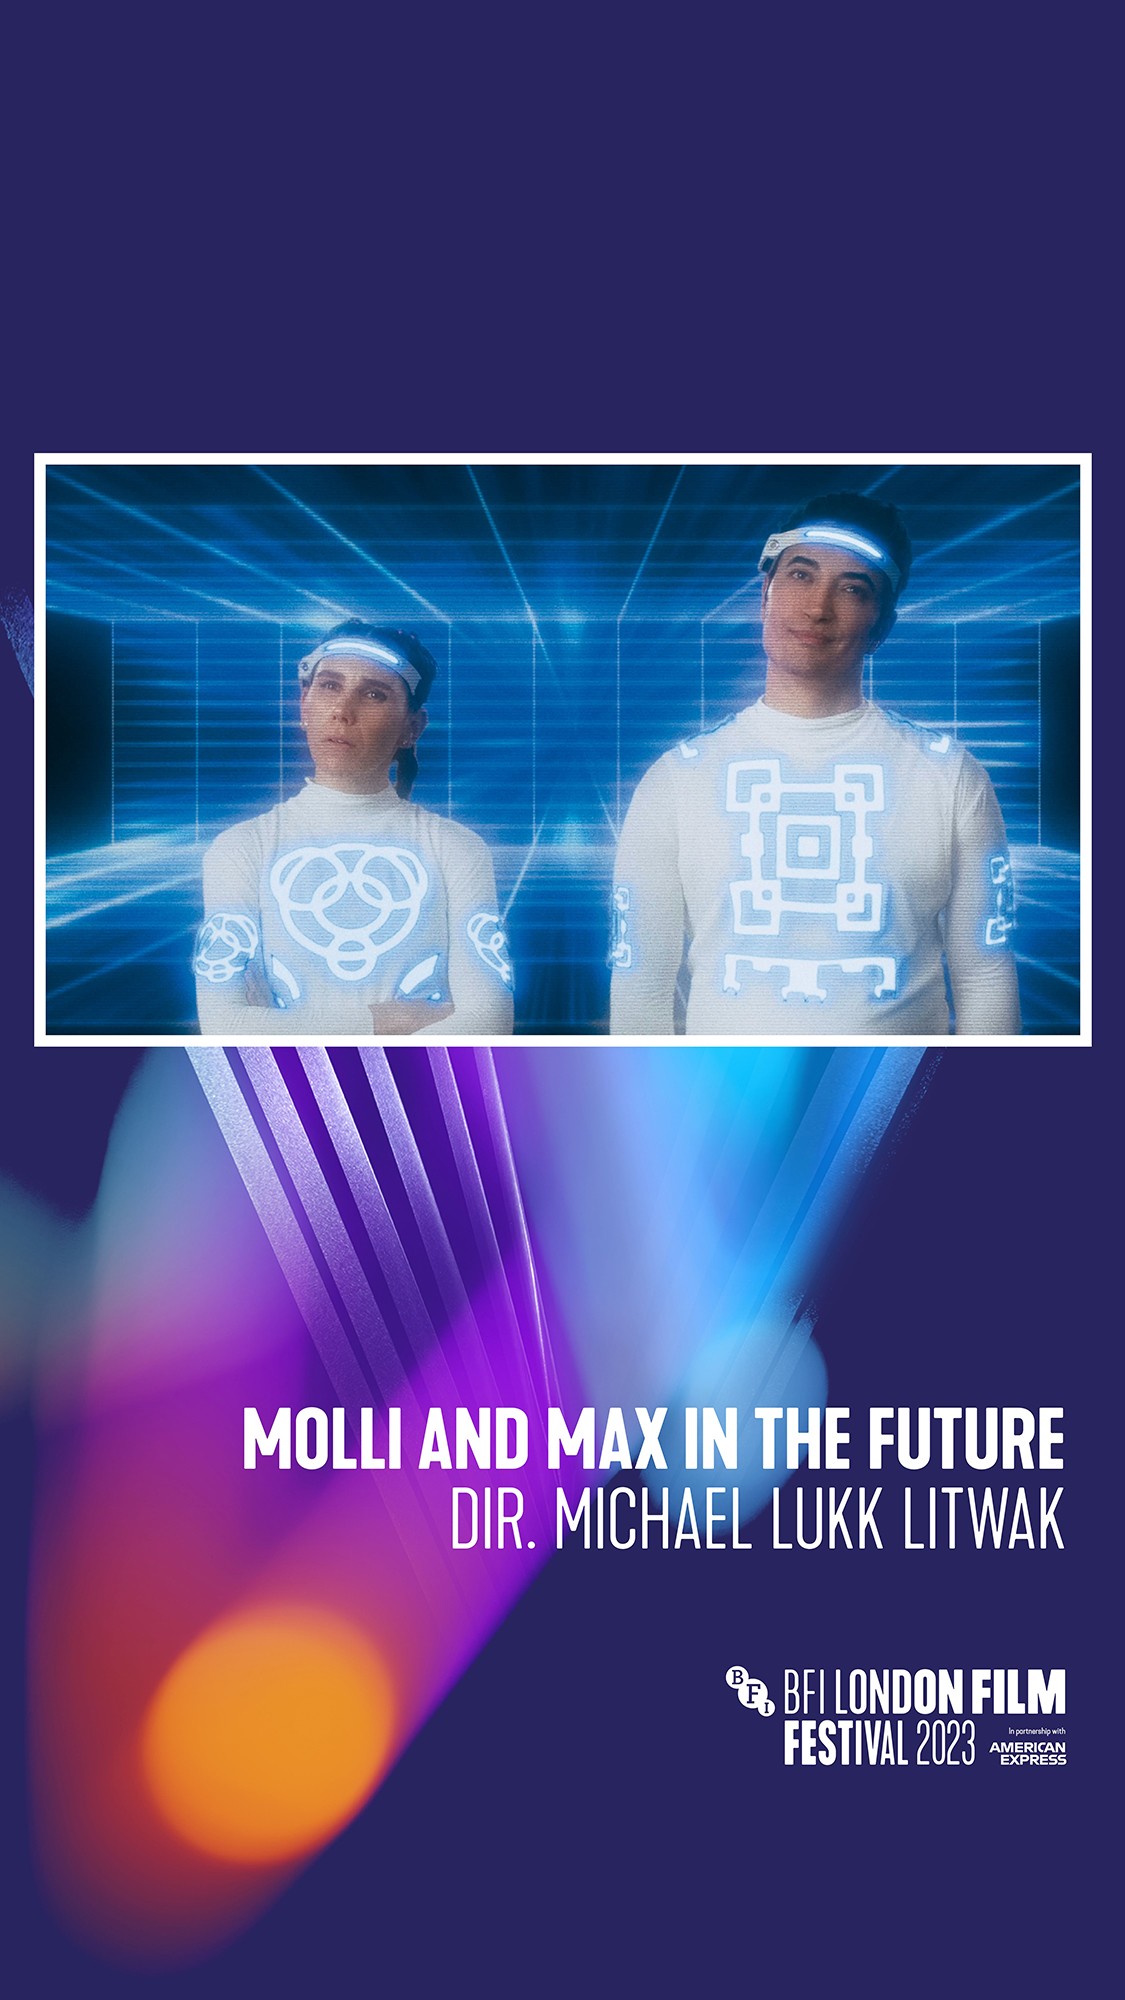 MOLLI AND MAX IN THE FUTURE